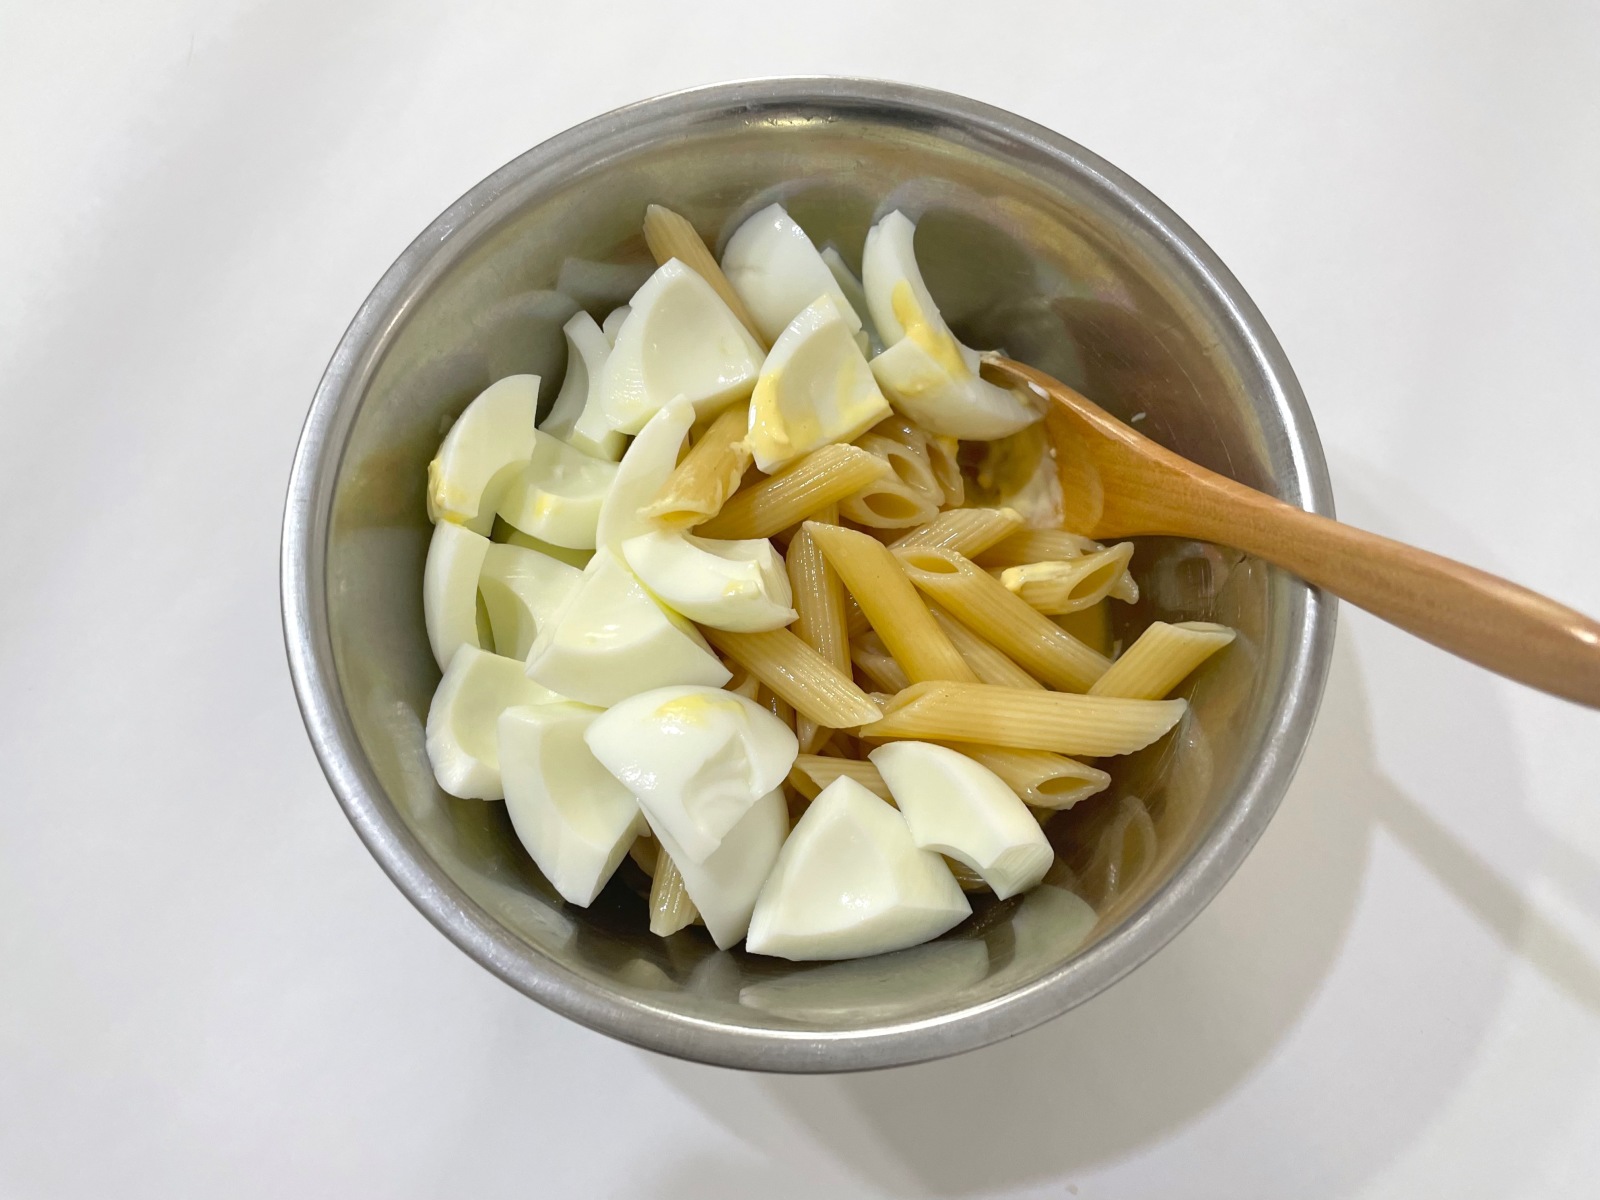 「クリーミーな卵マカロニサラダ」作り方4